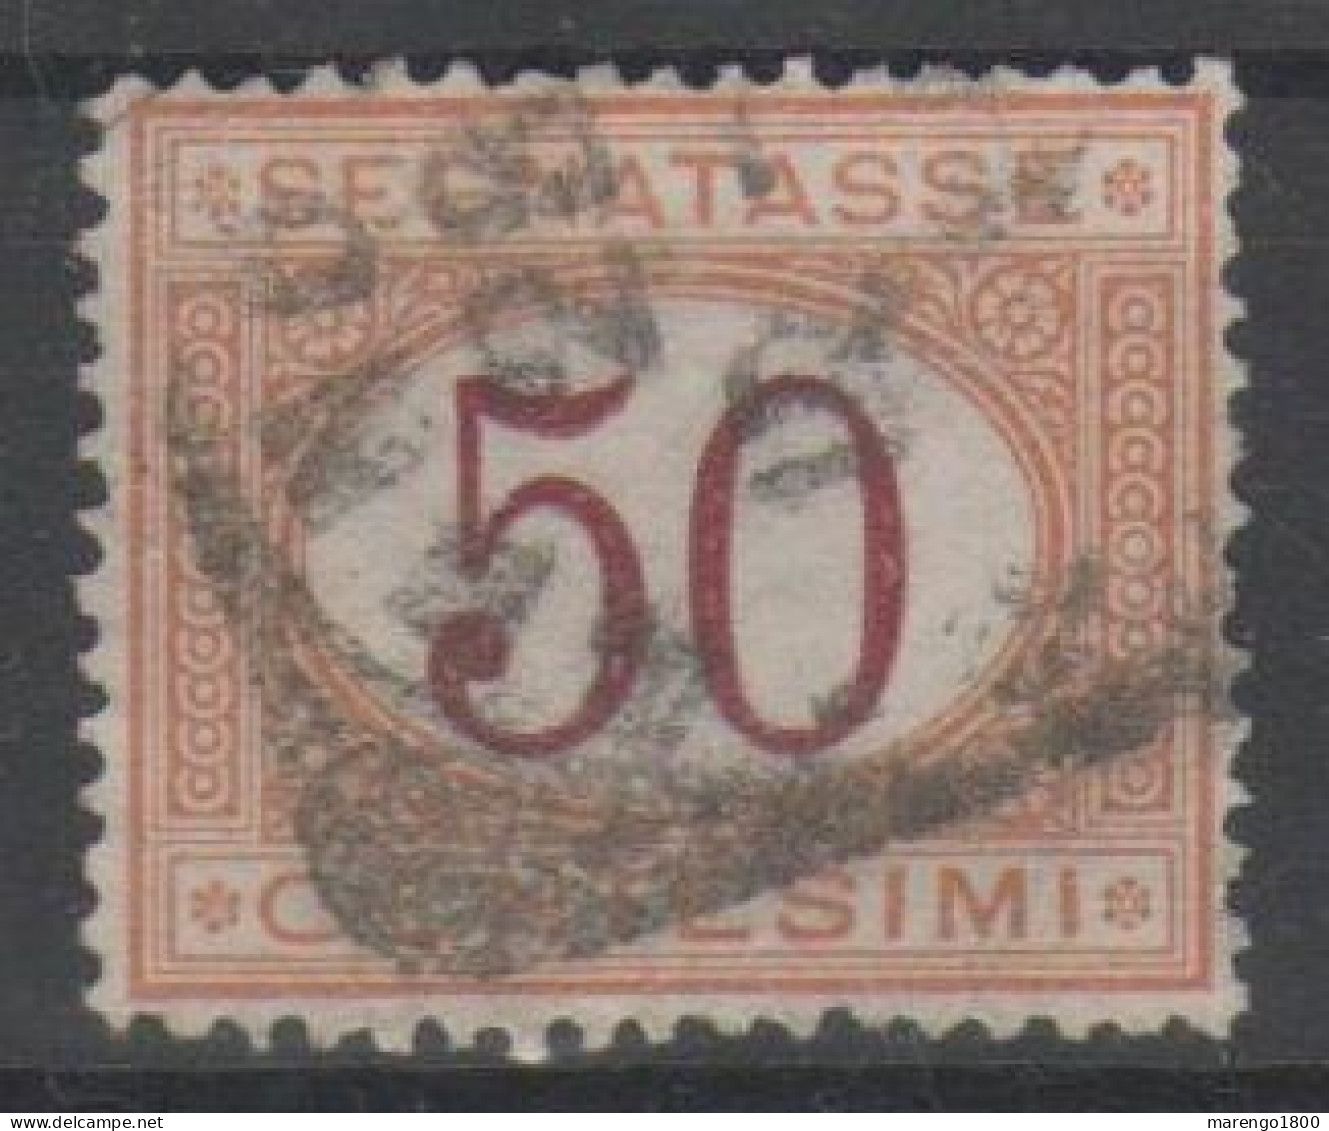 ITALIA 1870 - Segnatasse 50 C. - Segnatasse